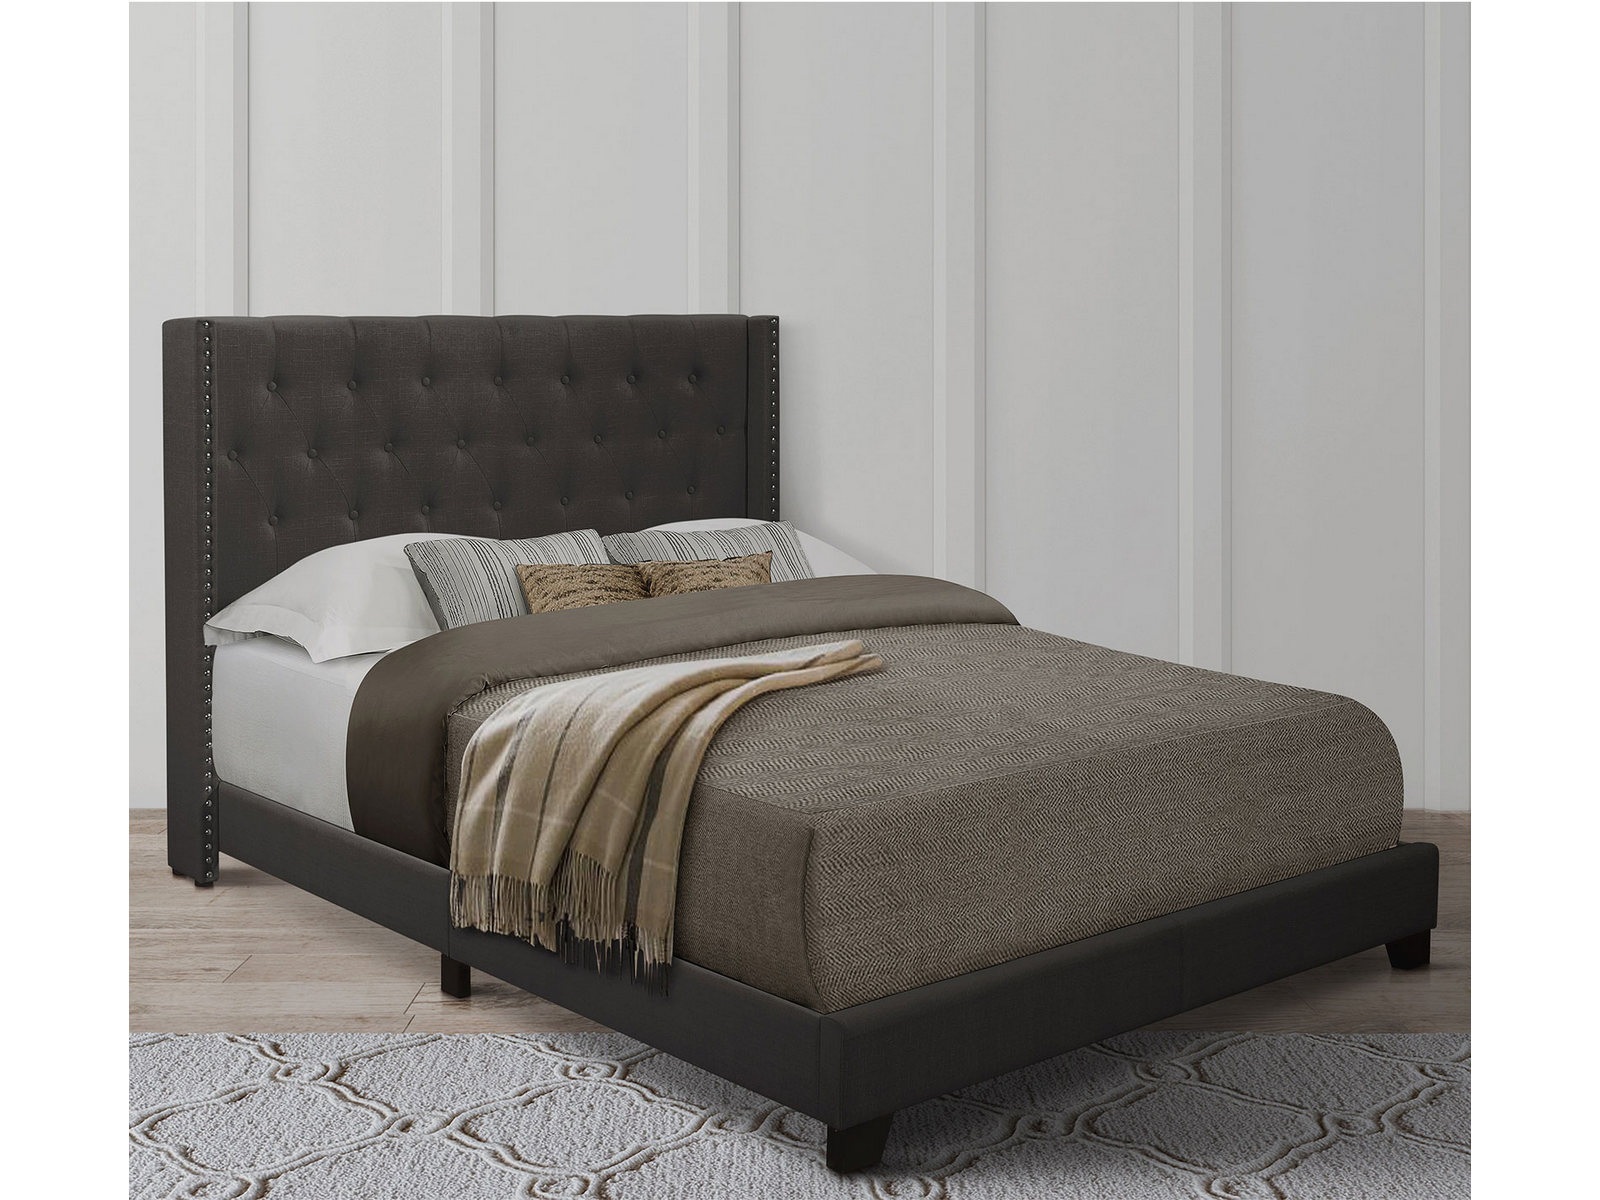 Homelegance Upholstered Bed Set | Full | Avery Bed Frame & Headboard | Dark Gray